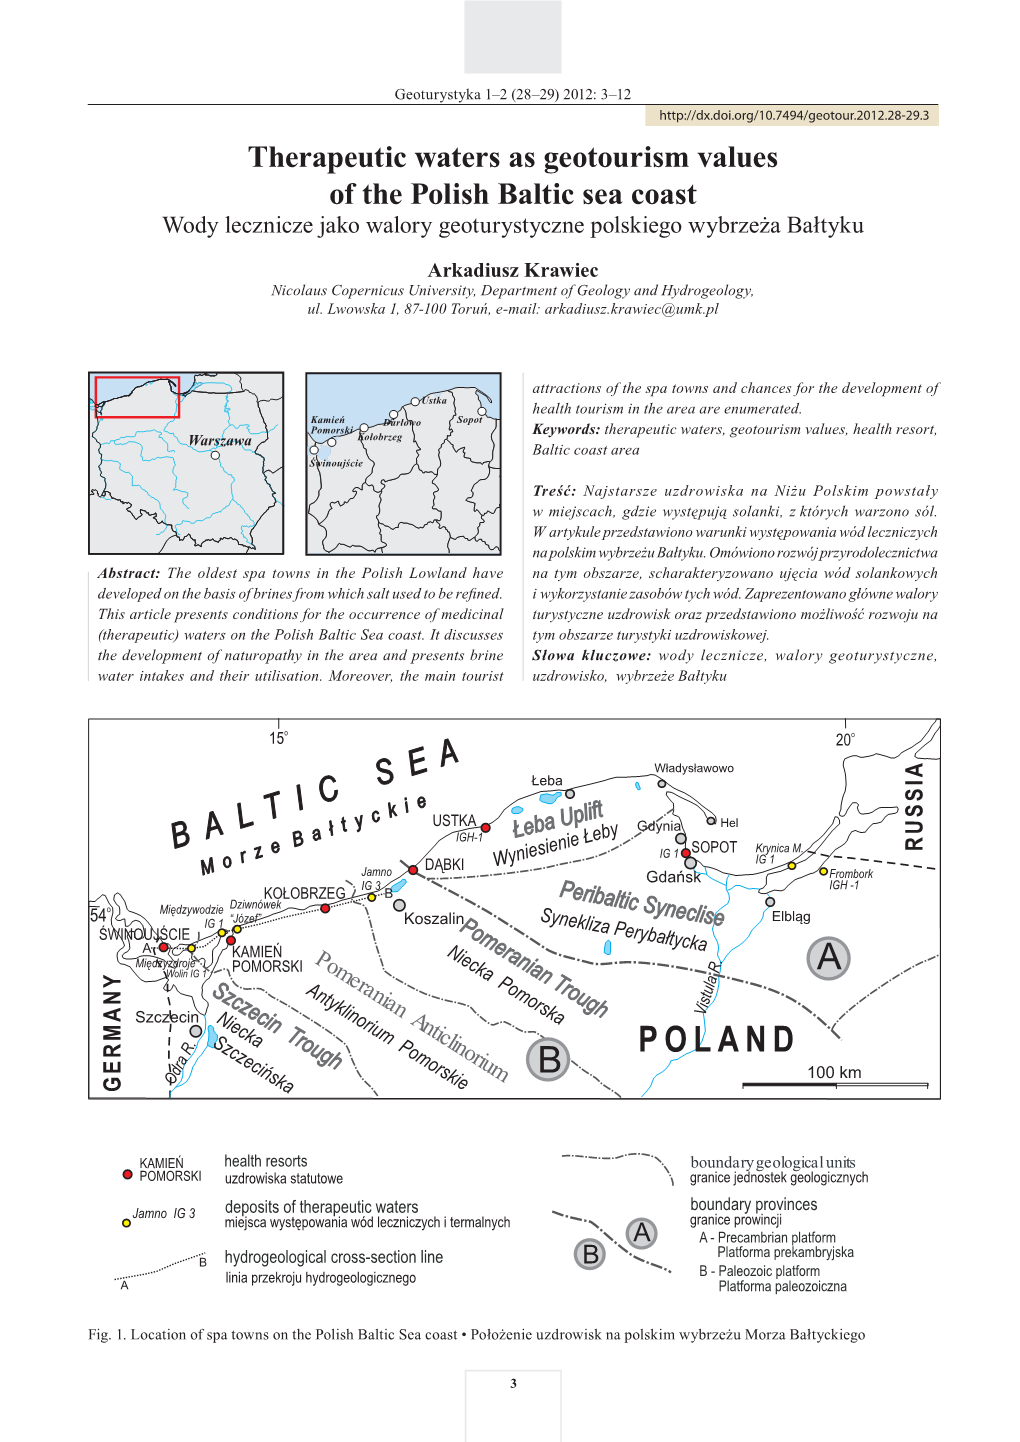 Therapeutic Waters As Geotourism Values of the Polish Baltic Sea Coast Wody Lecznicze Jako Walory Geoturystyczne Polskiego Wybrzeża Bałtyku